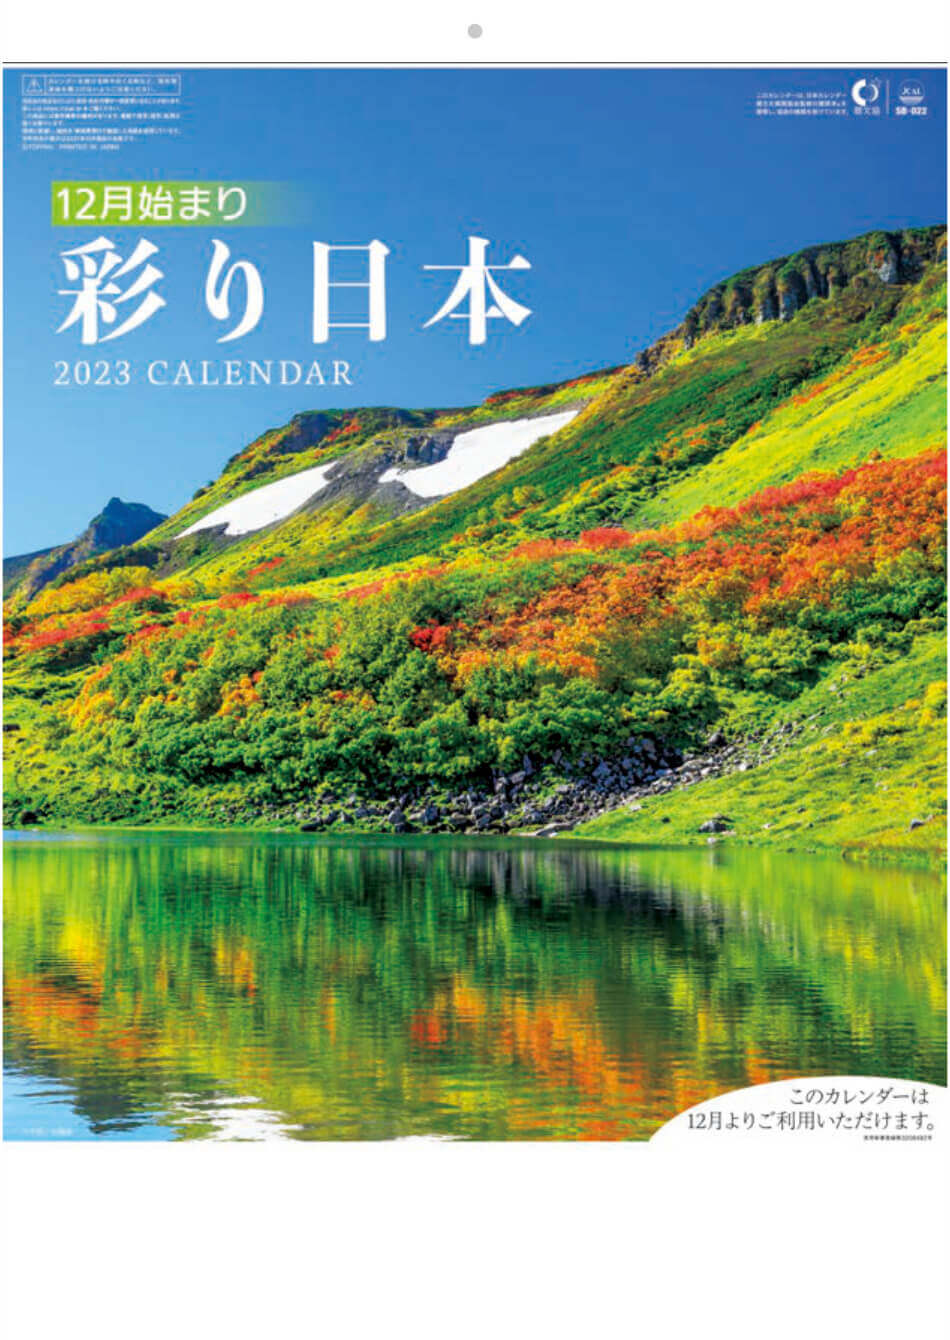  彩り日本(12月はじまり） 2023年カレンダーの画像